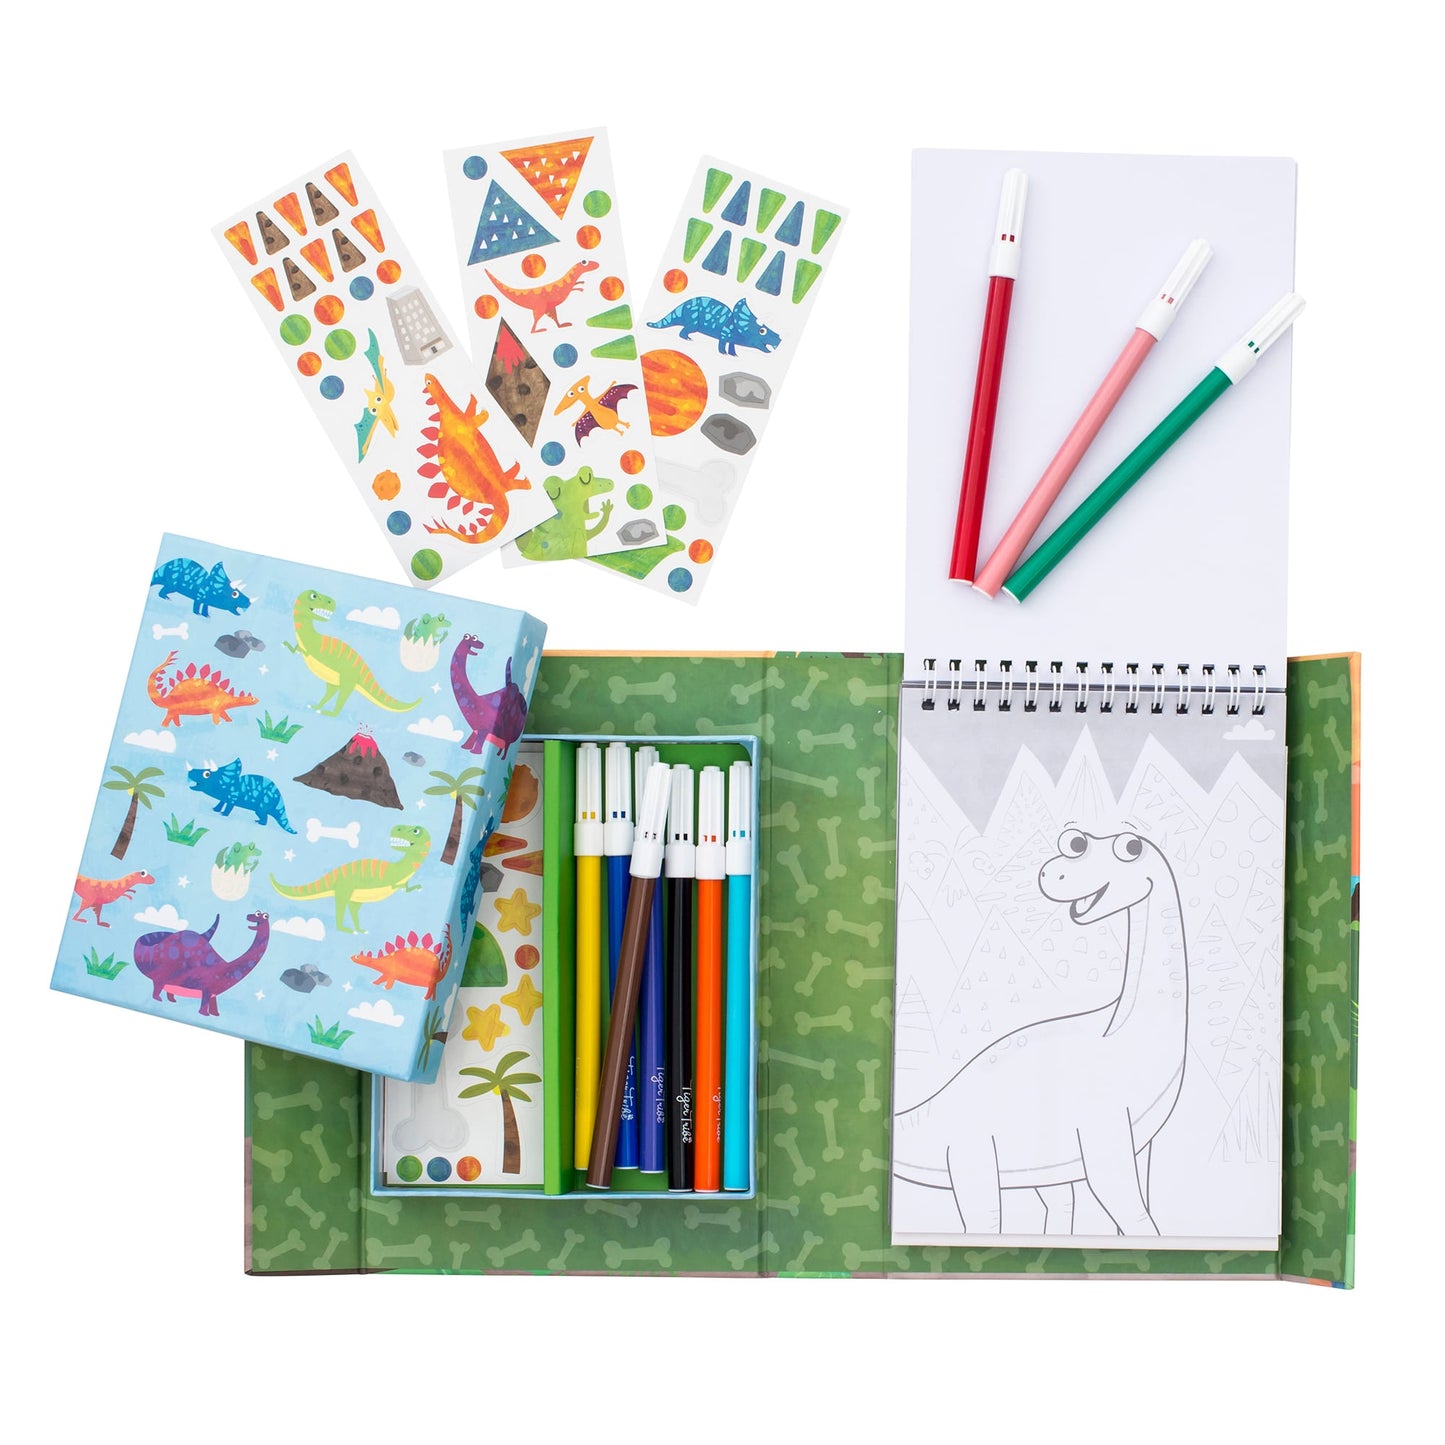 Dinosaur Coloring Set  - Doodlebug's Children's Boutique